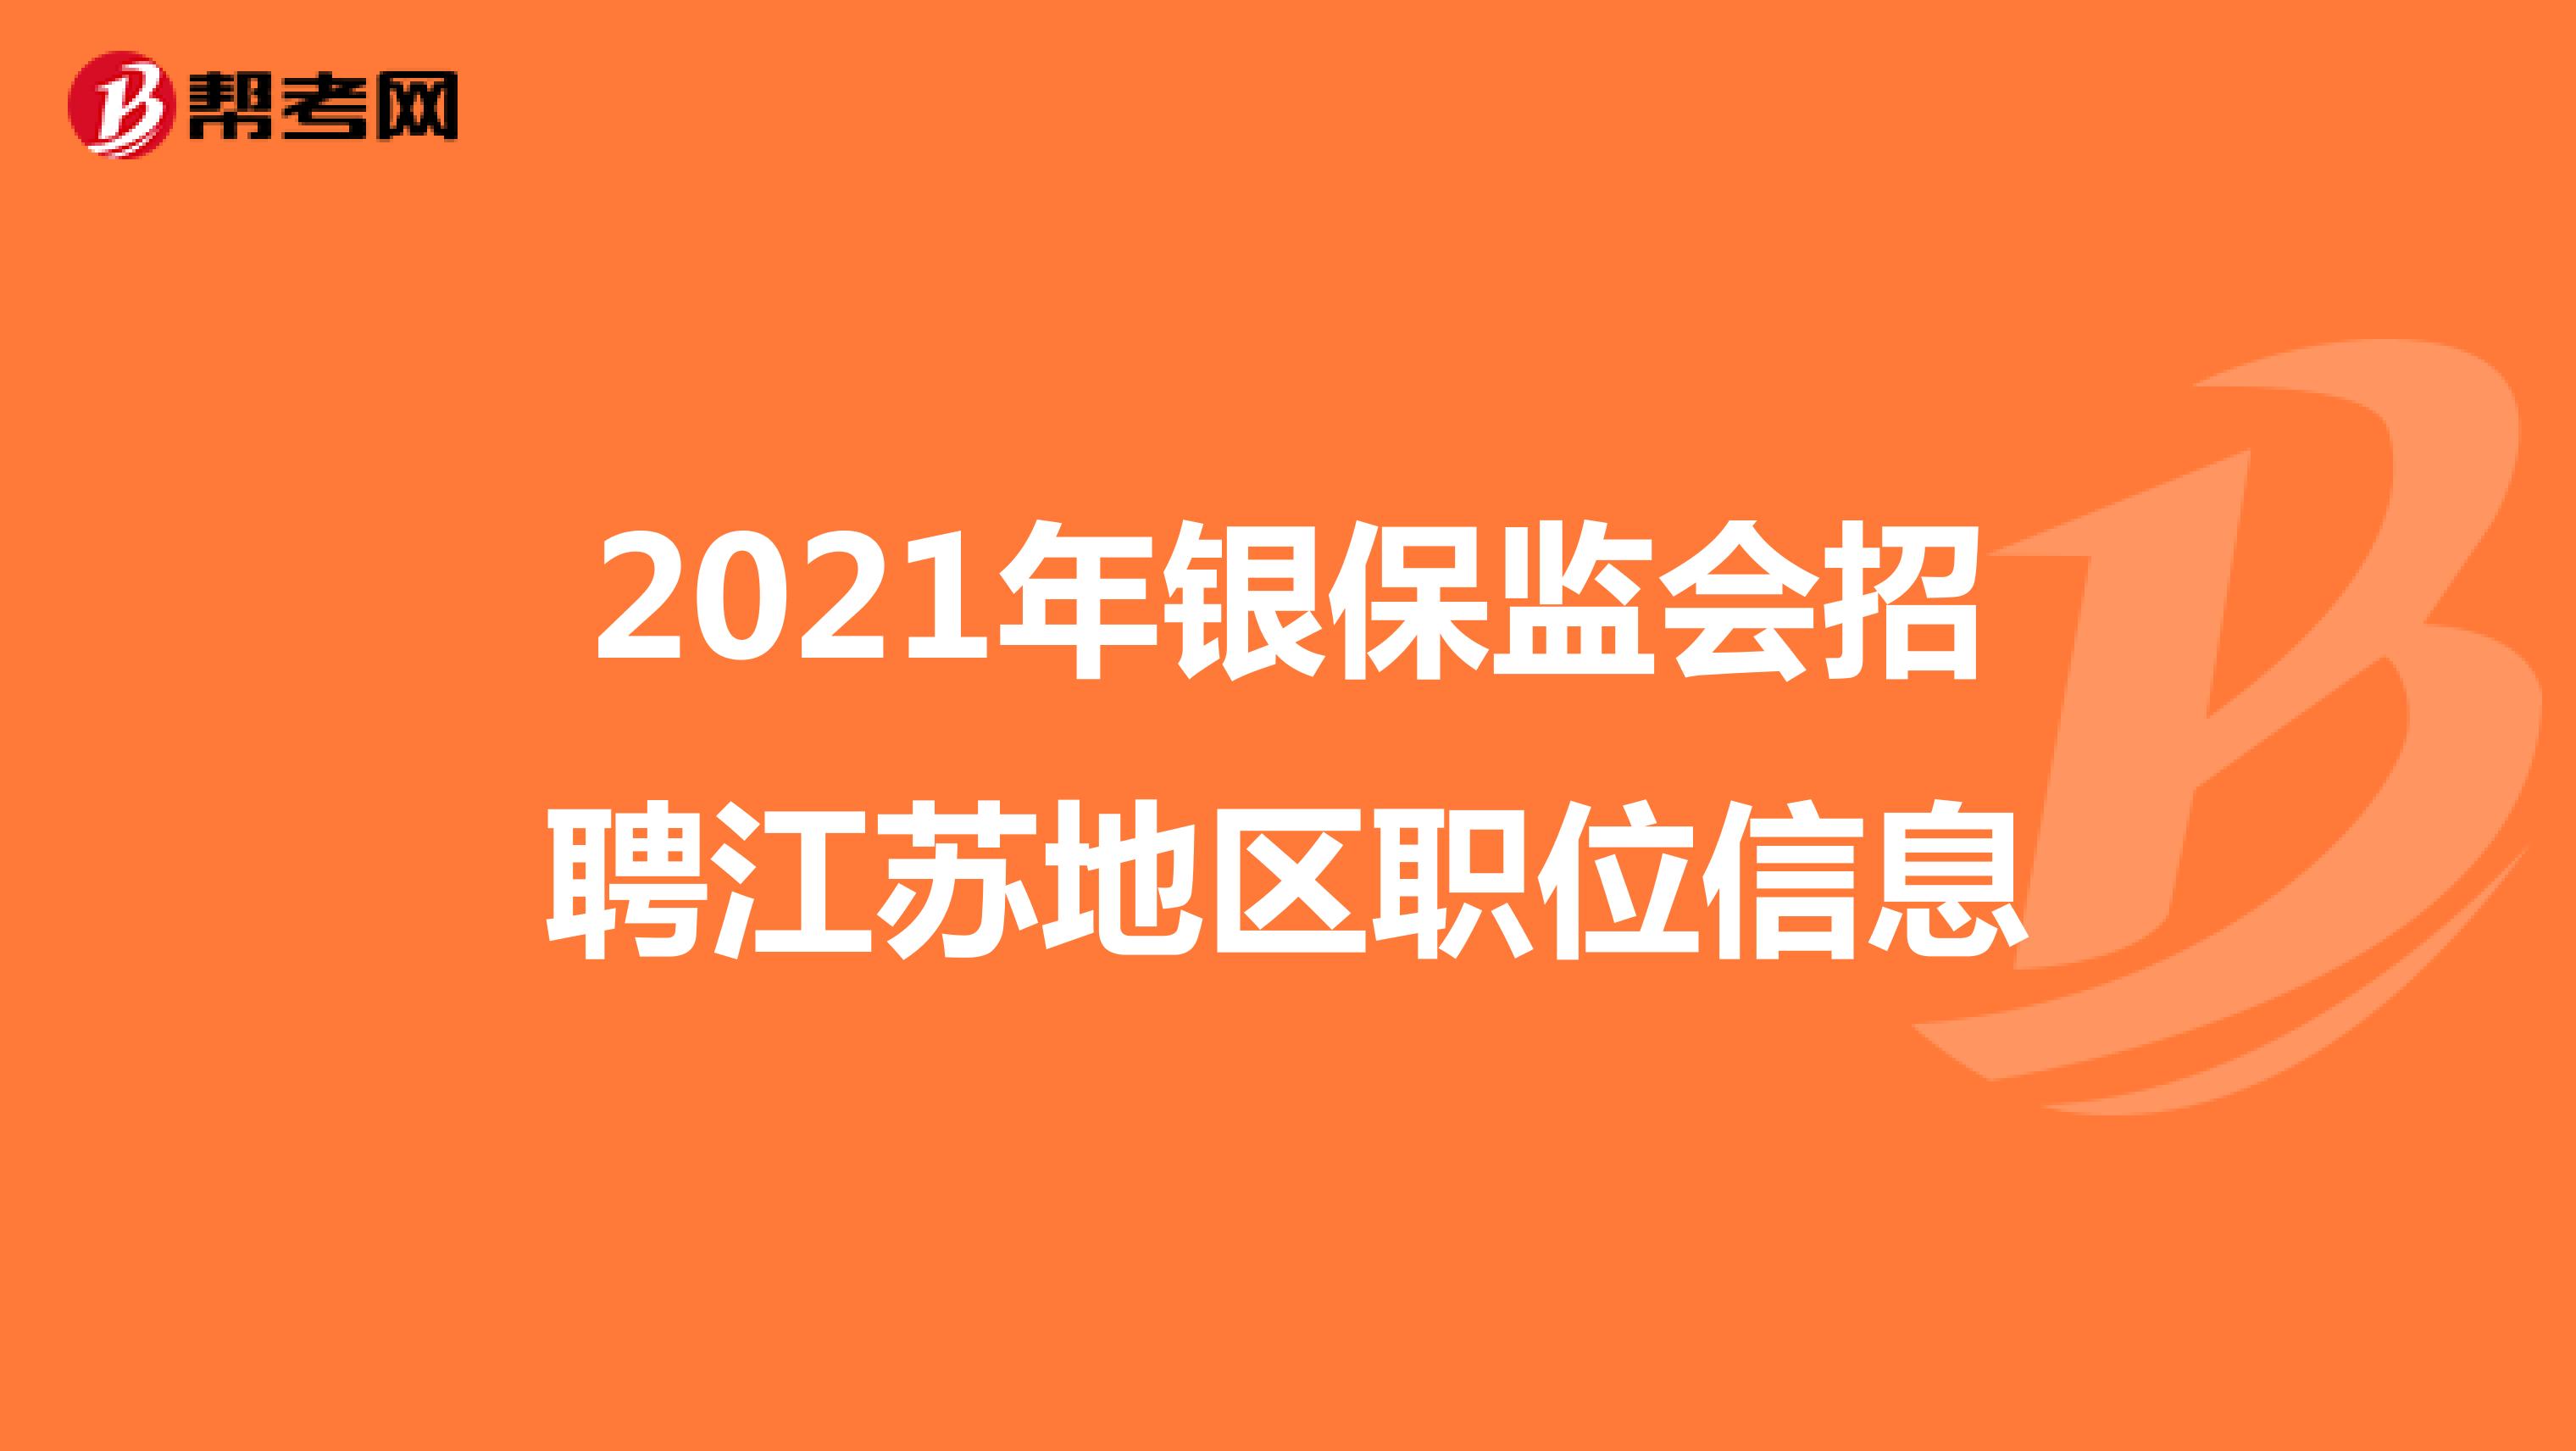 2021年银保监会招聘江苏地区职位信息